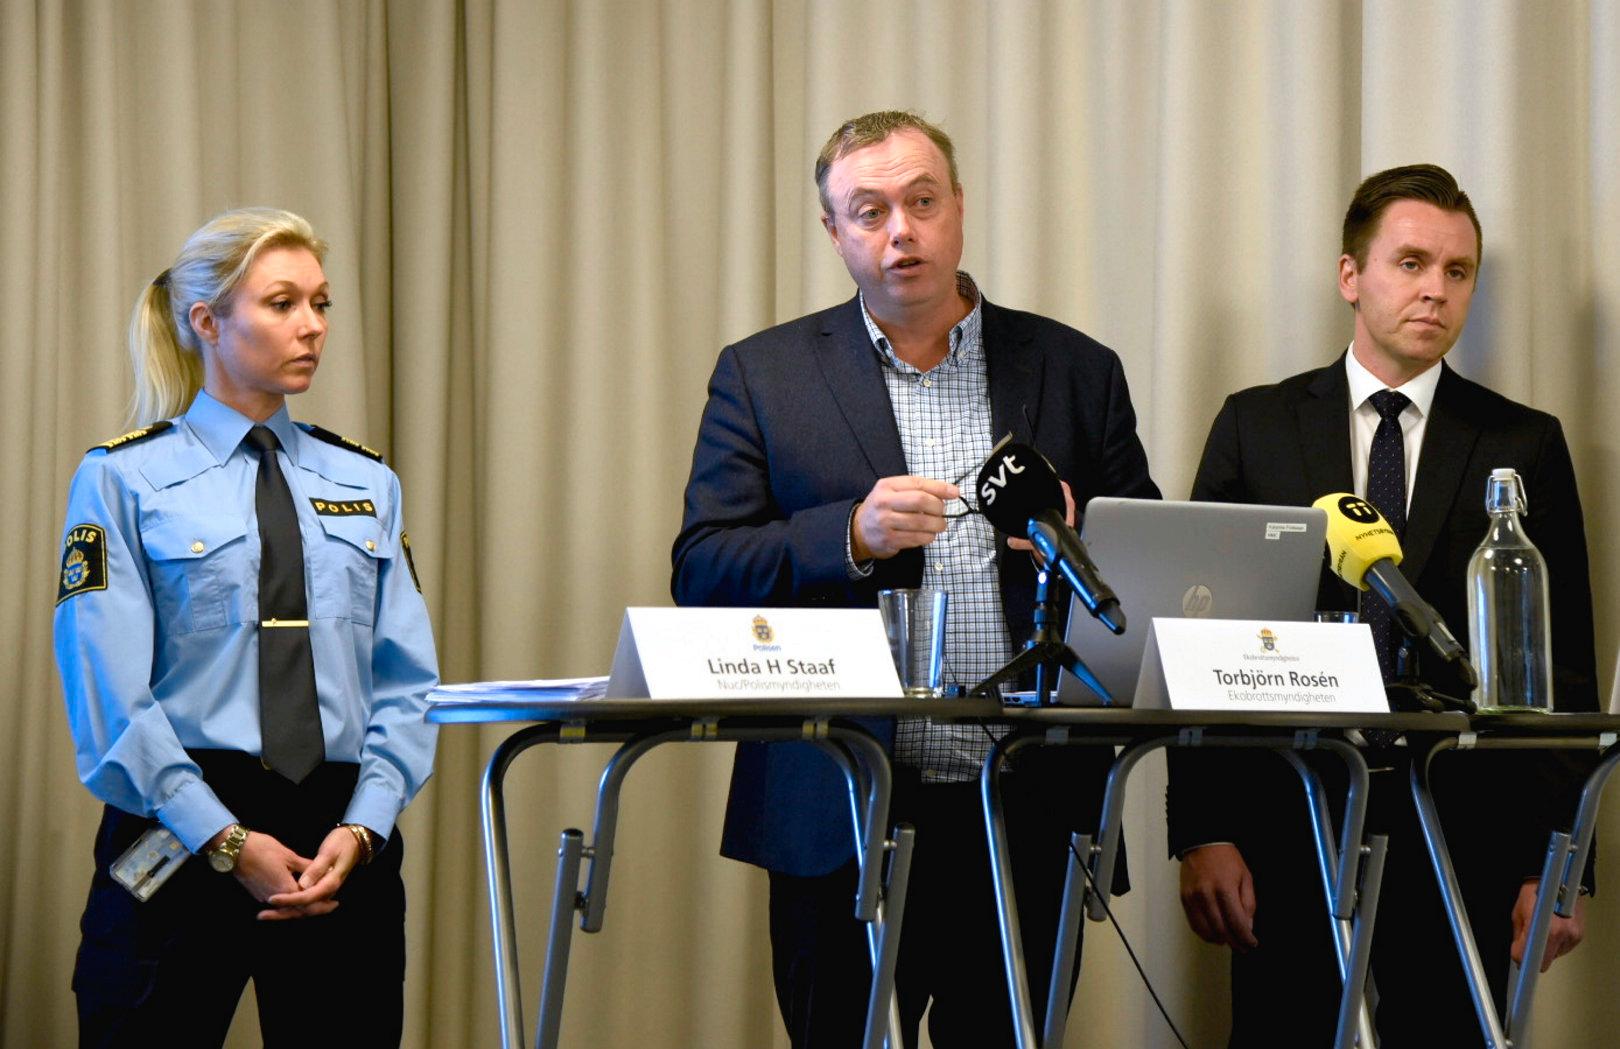 Linda H Staaf, Polismyndigheten, Torbjörn Rosén från Ekobrottsmyndigheten och Per Eleblad från Försäkringskassan presenterar den nya lägesbilden av organiserad brottslighet.